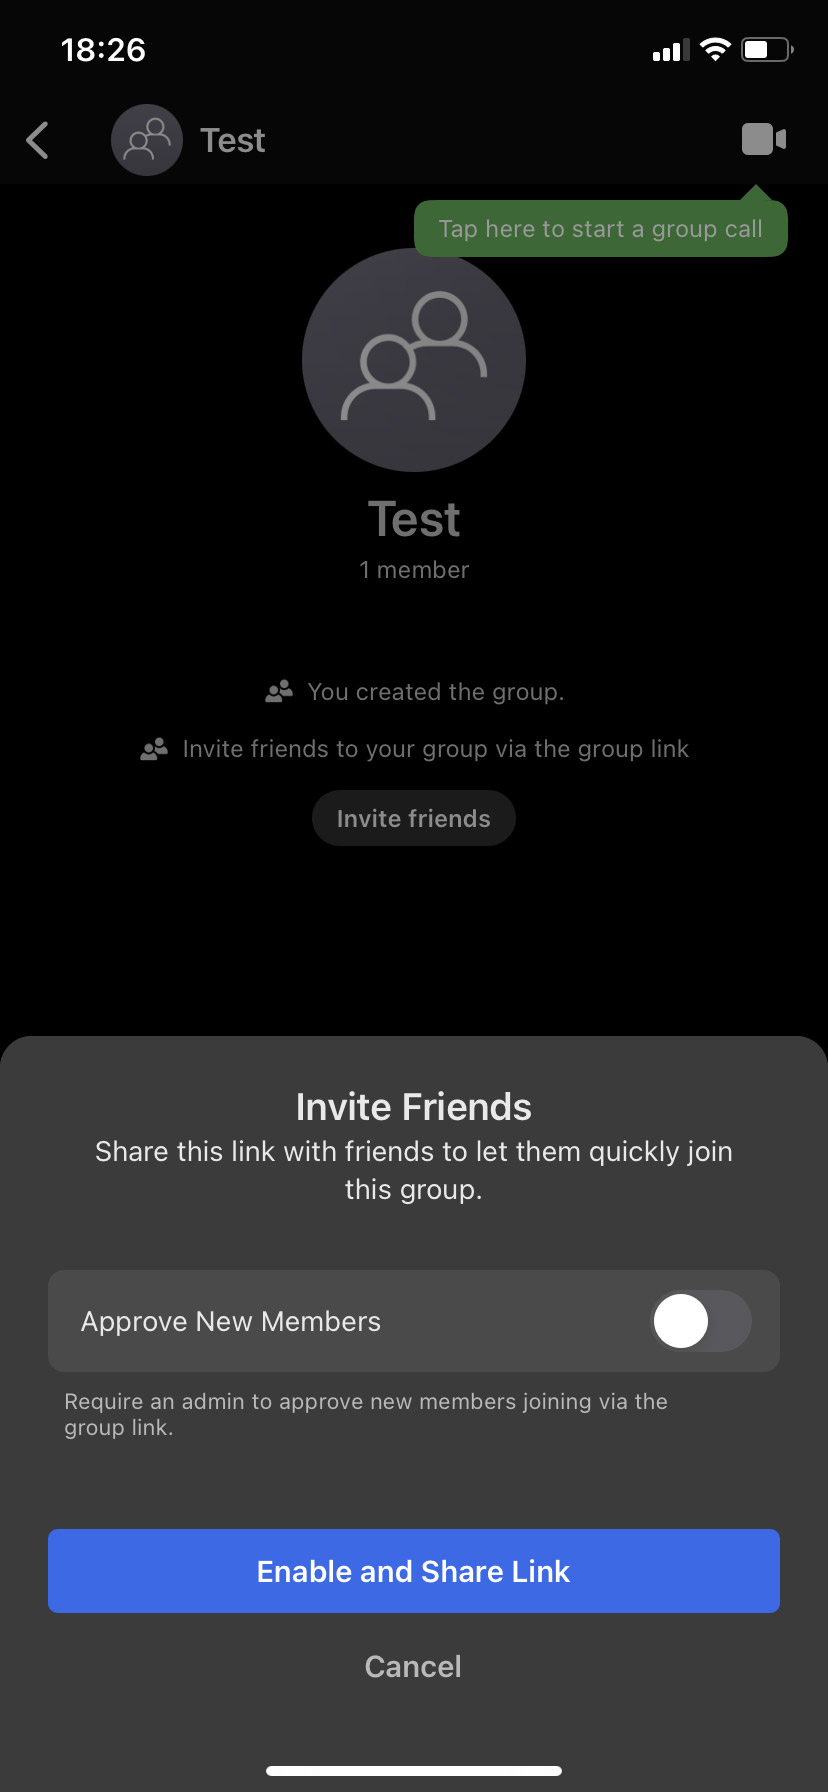 Скриншот экрана Signal, на котором можно пригласить друзей в групповой чат.